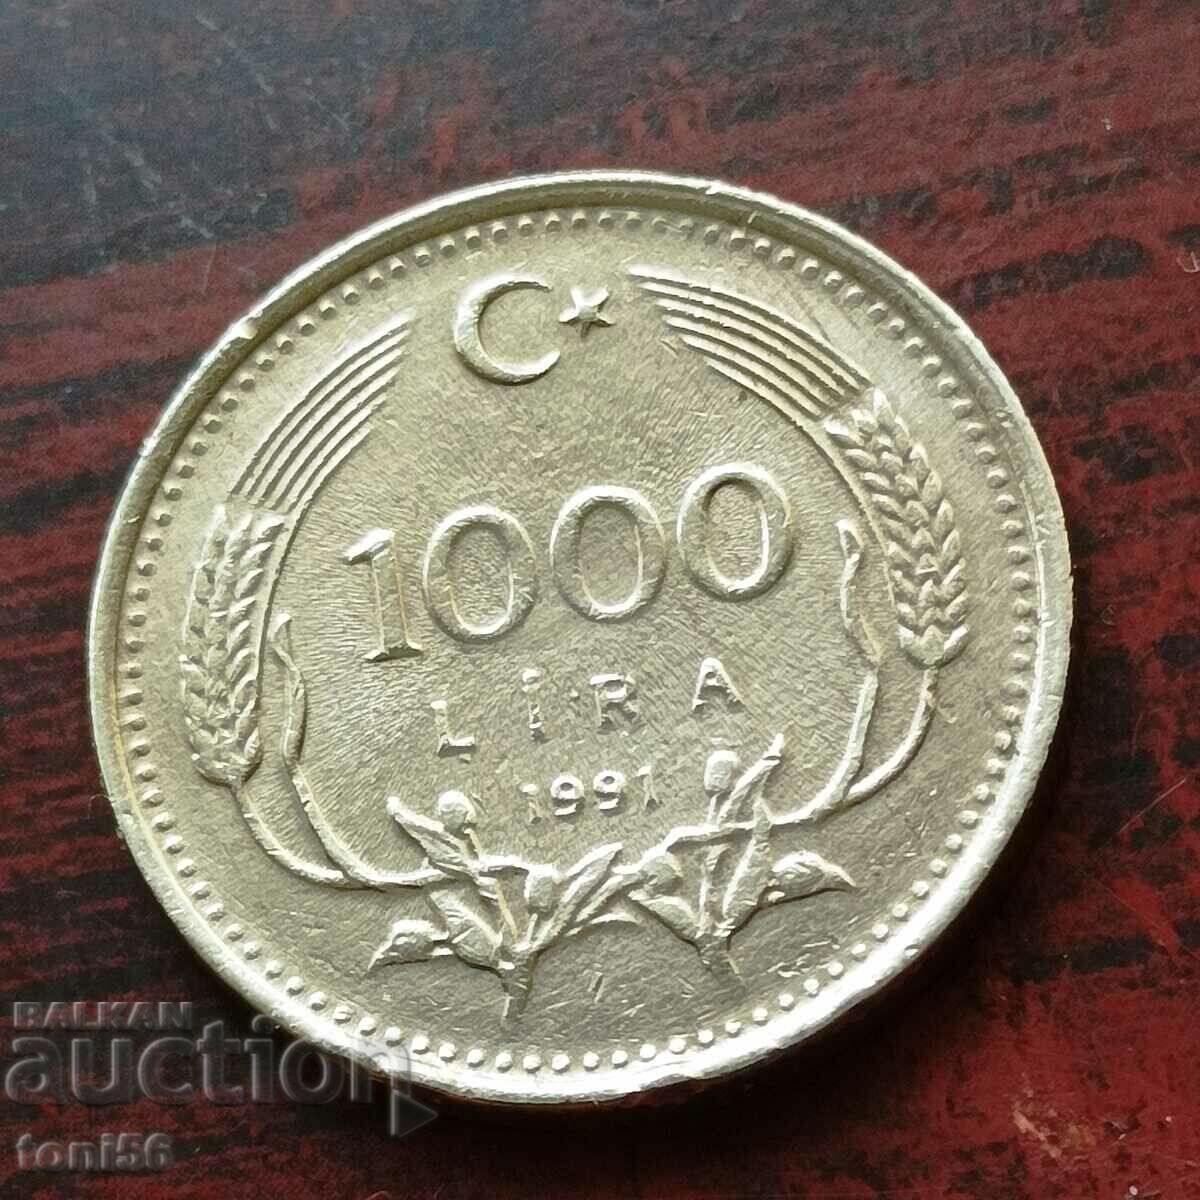 Τουρκία 1000 λίρες 1991